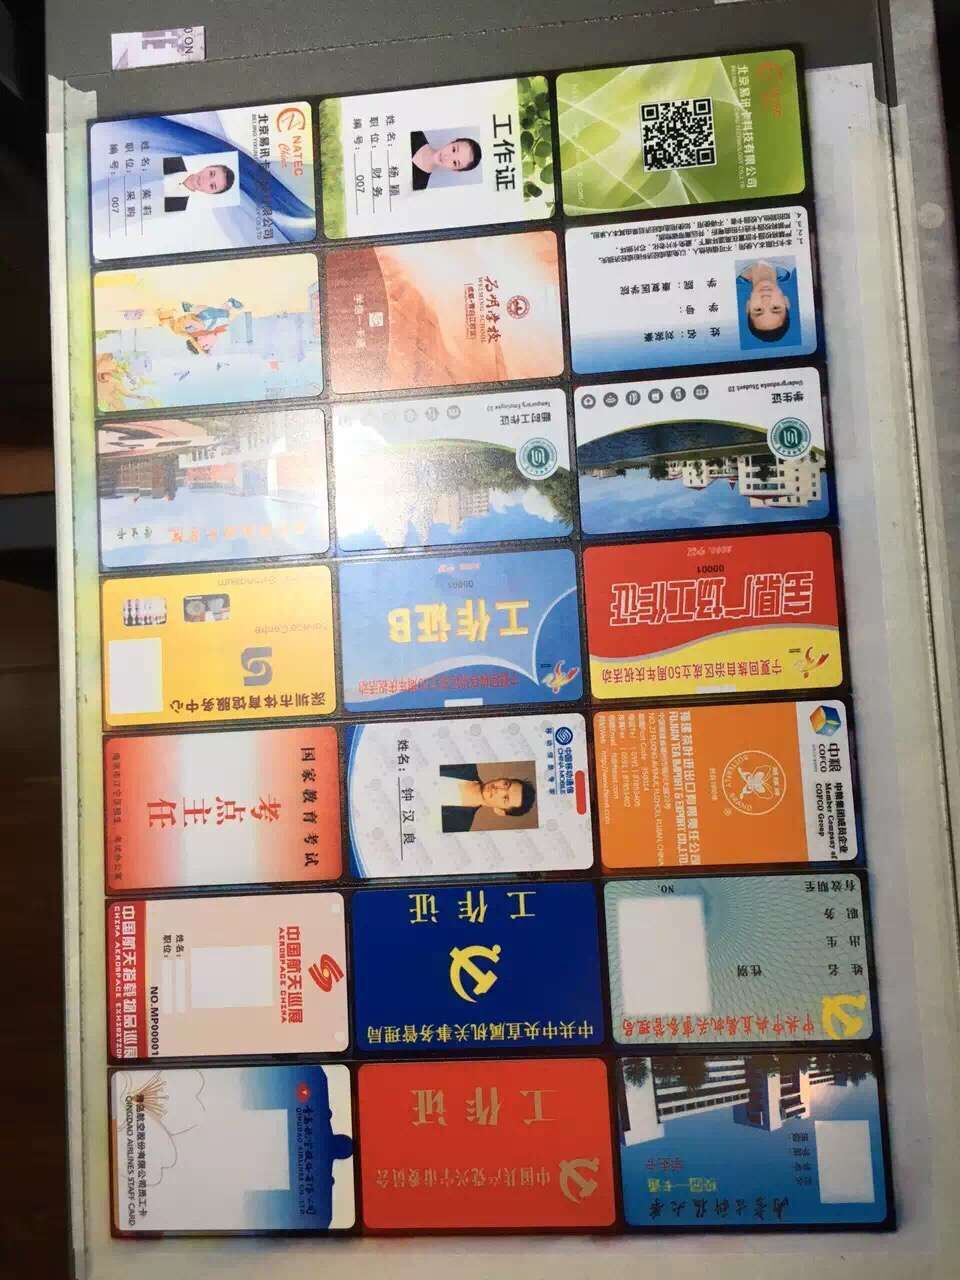 供应人像卡pvc人像卡UV涂层直印卡北京智能卡图片